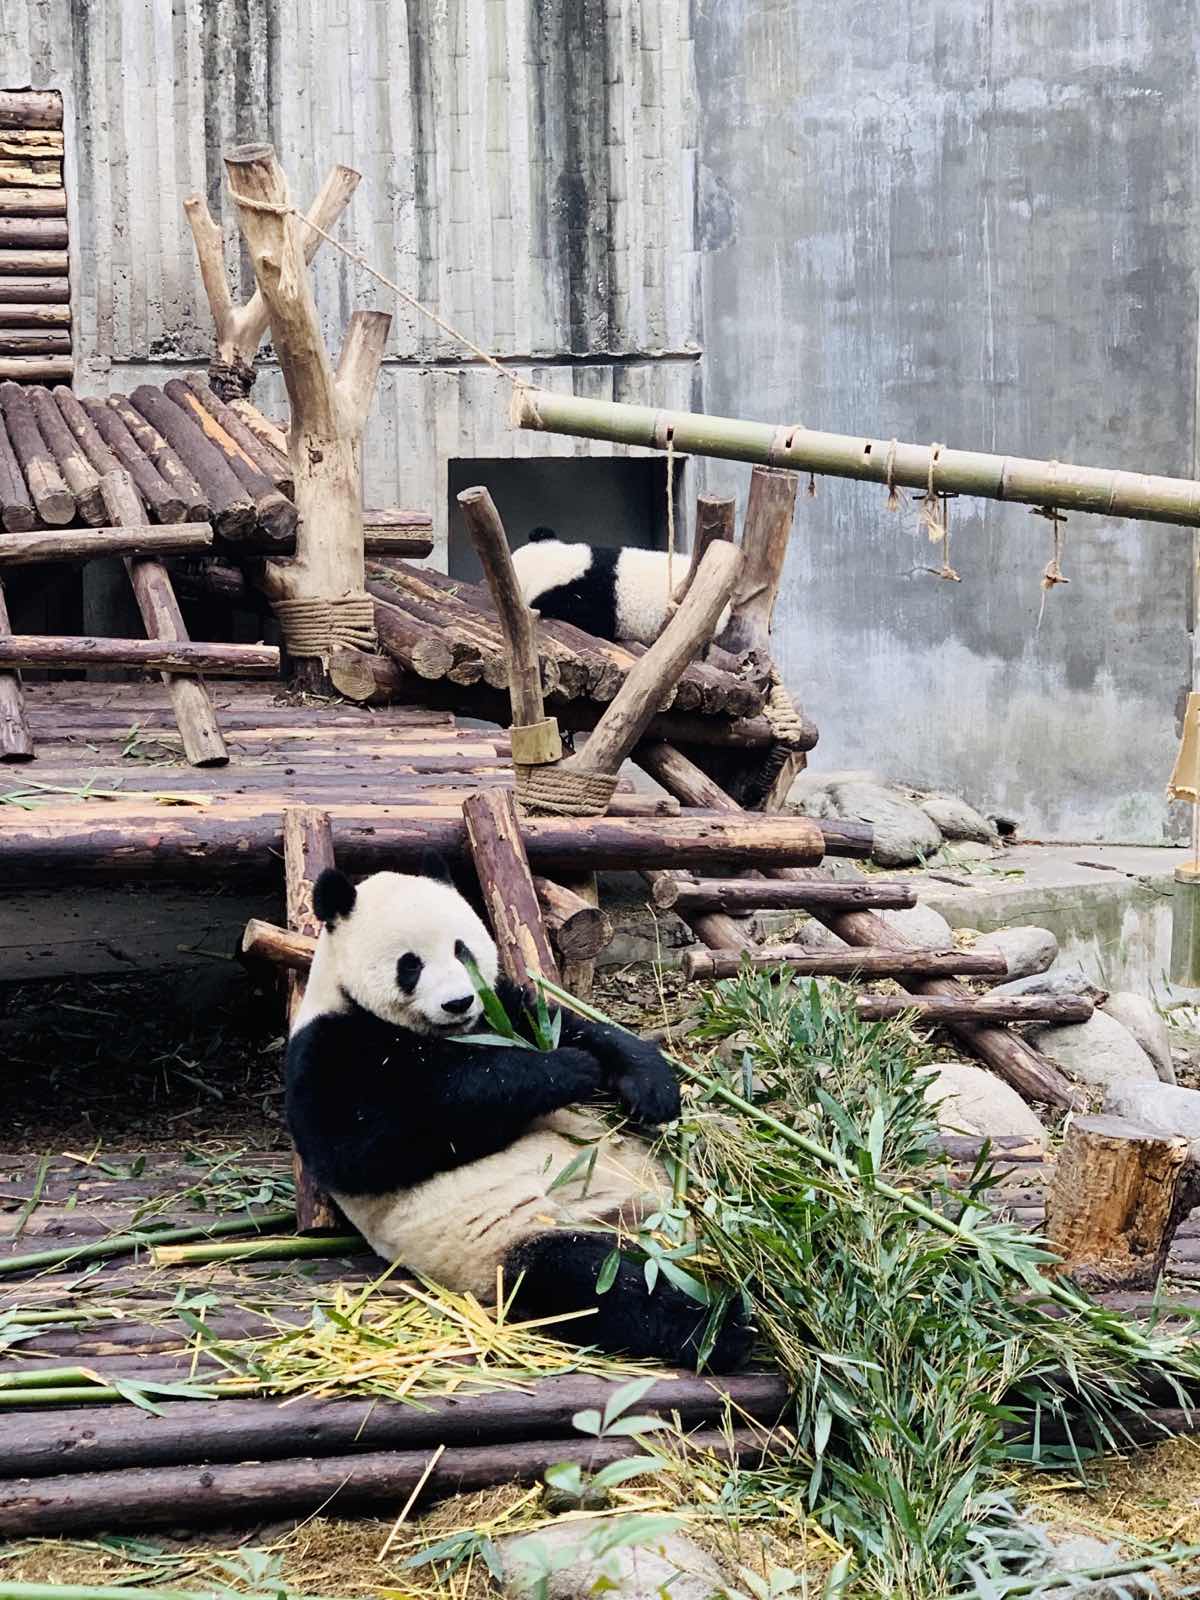 大熊猫繁育研究基地在成都东北山区，距离市区倒也不远。基地不大，早起的话